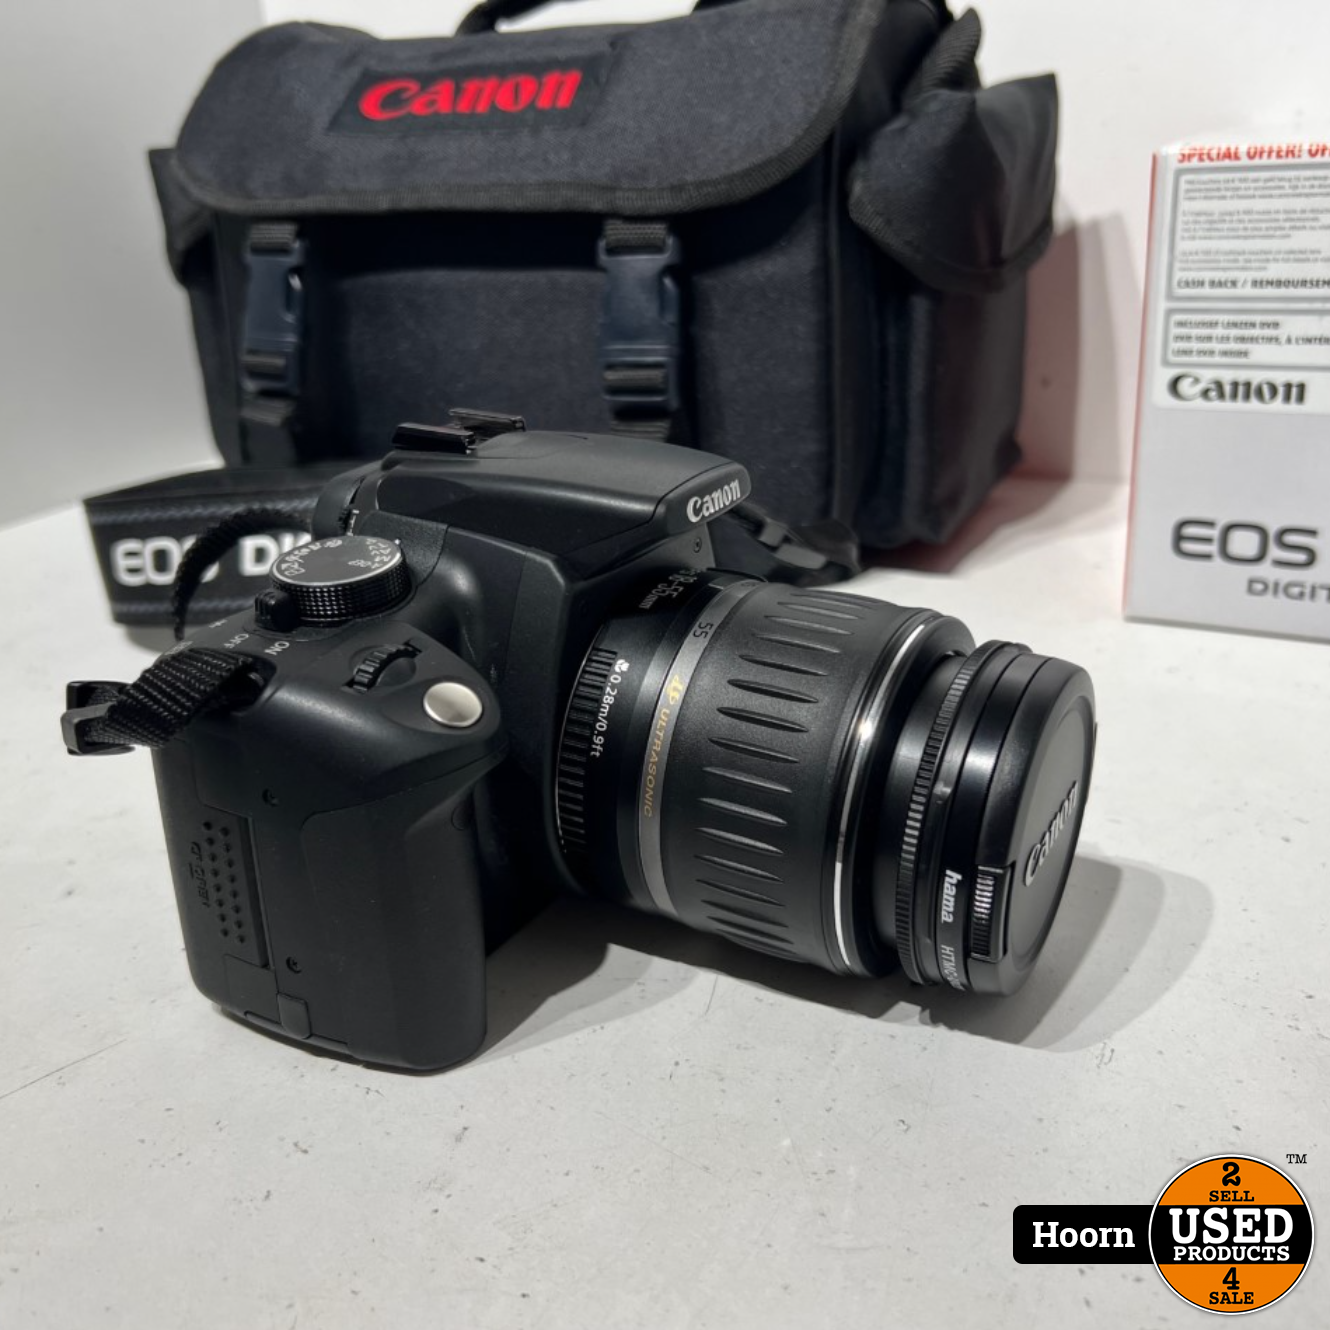 winnaar Acquiesce Belastingen Canon EOS 350D Compleet in Doos incl. EFS 18-55mm Lens, 3 Accu's Lader en  Tas - Used Products Hoorn